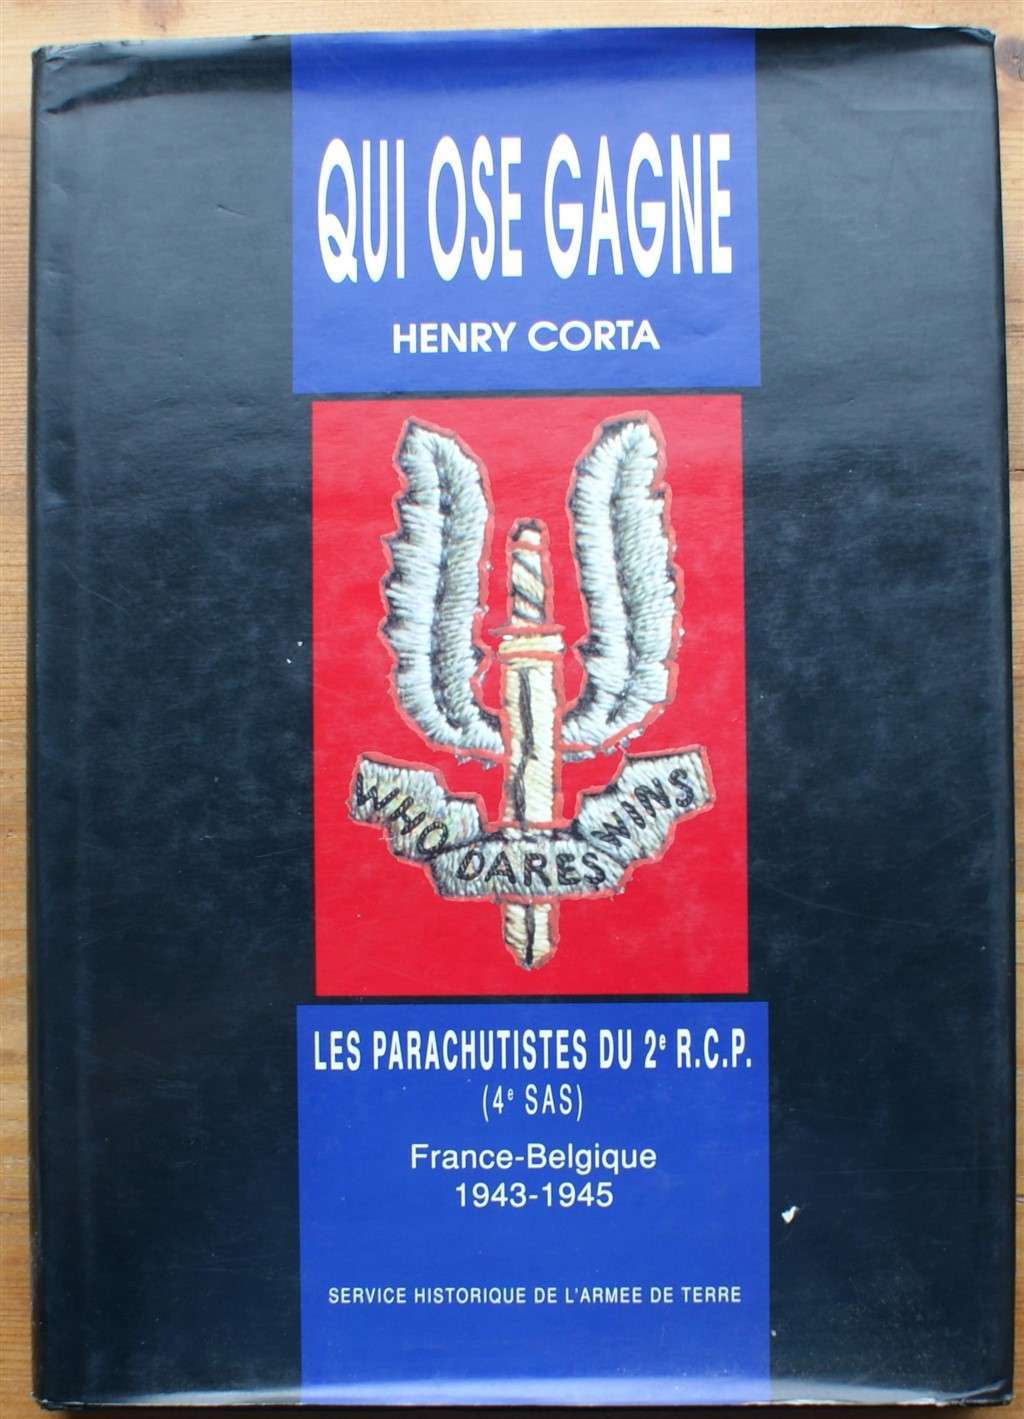 Qui ose gagne - Les parachutistes du 2e R.C.P. (4e SAS) France-Belgique 1943-1945 - Henry Corta